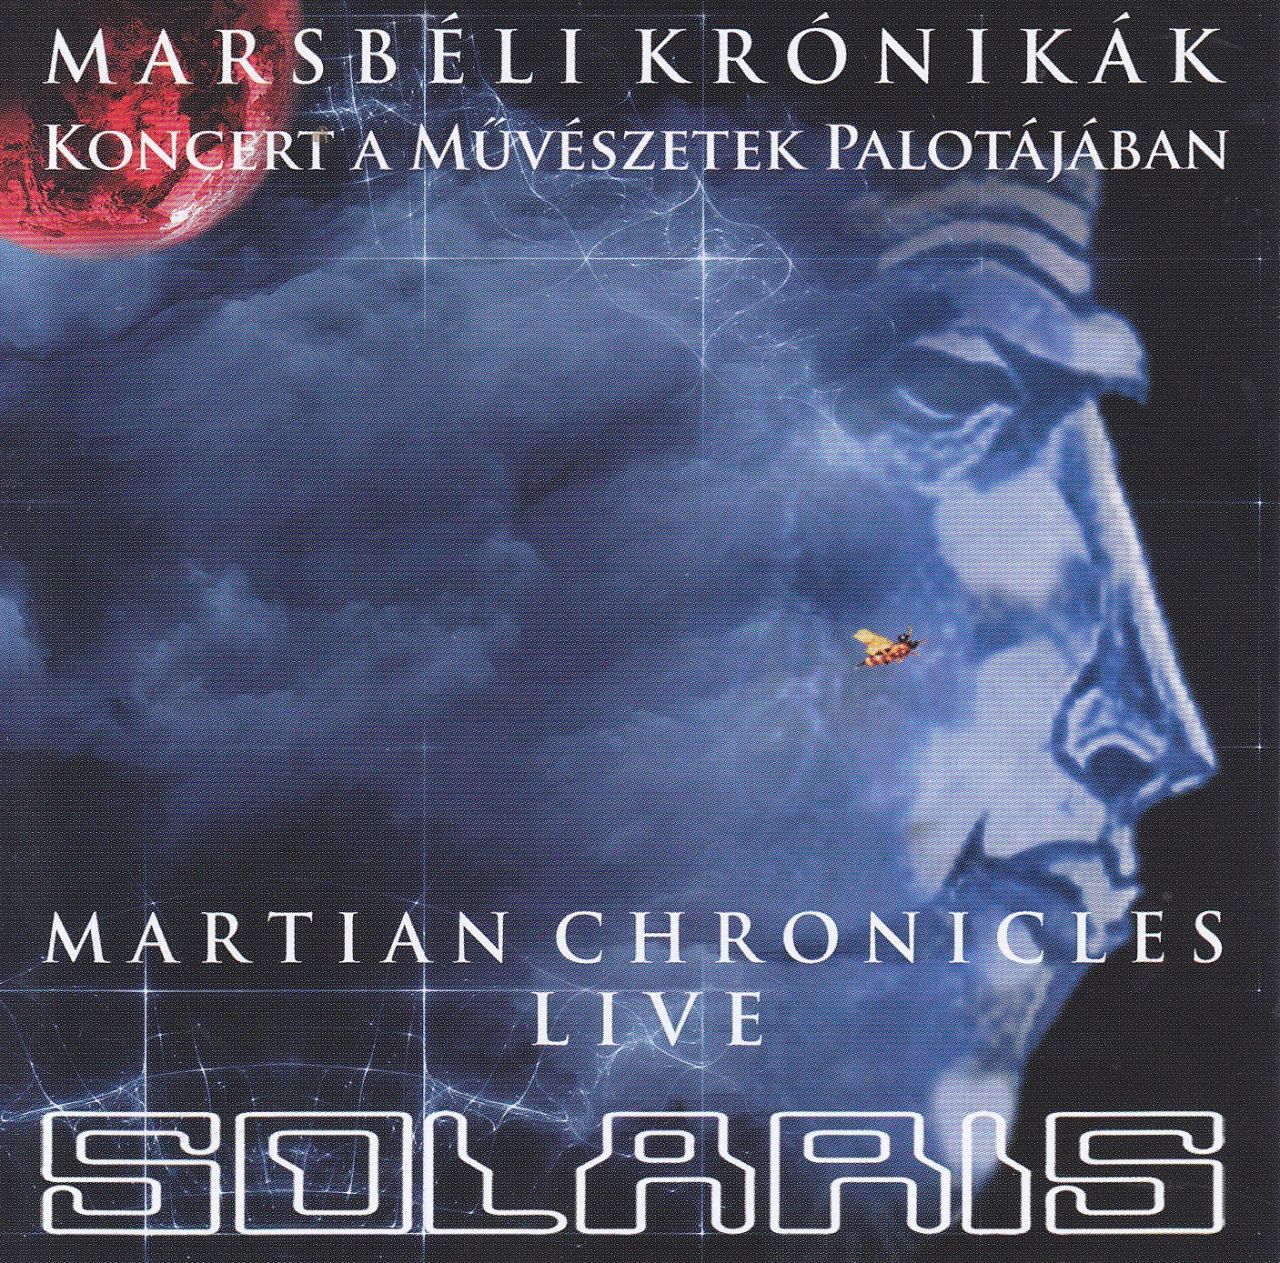 Solaris: Marsbéli krónikák (CD)